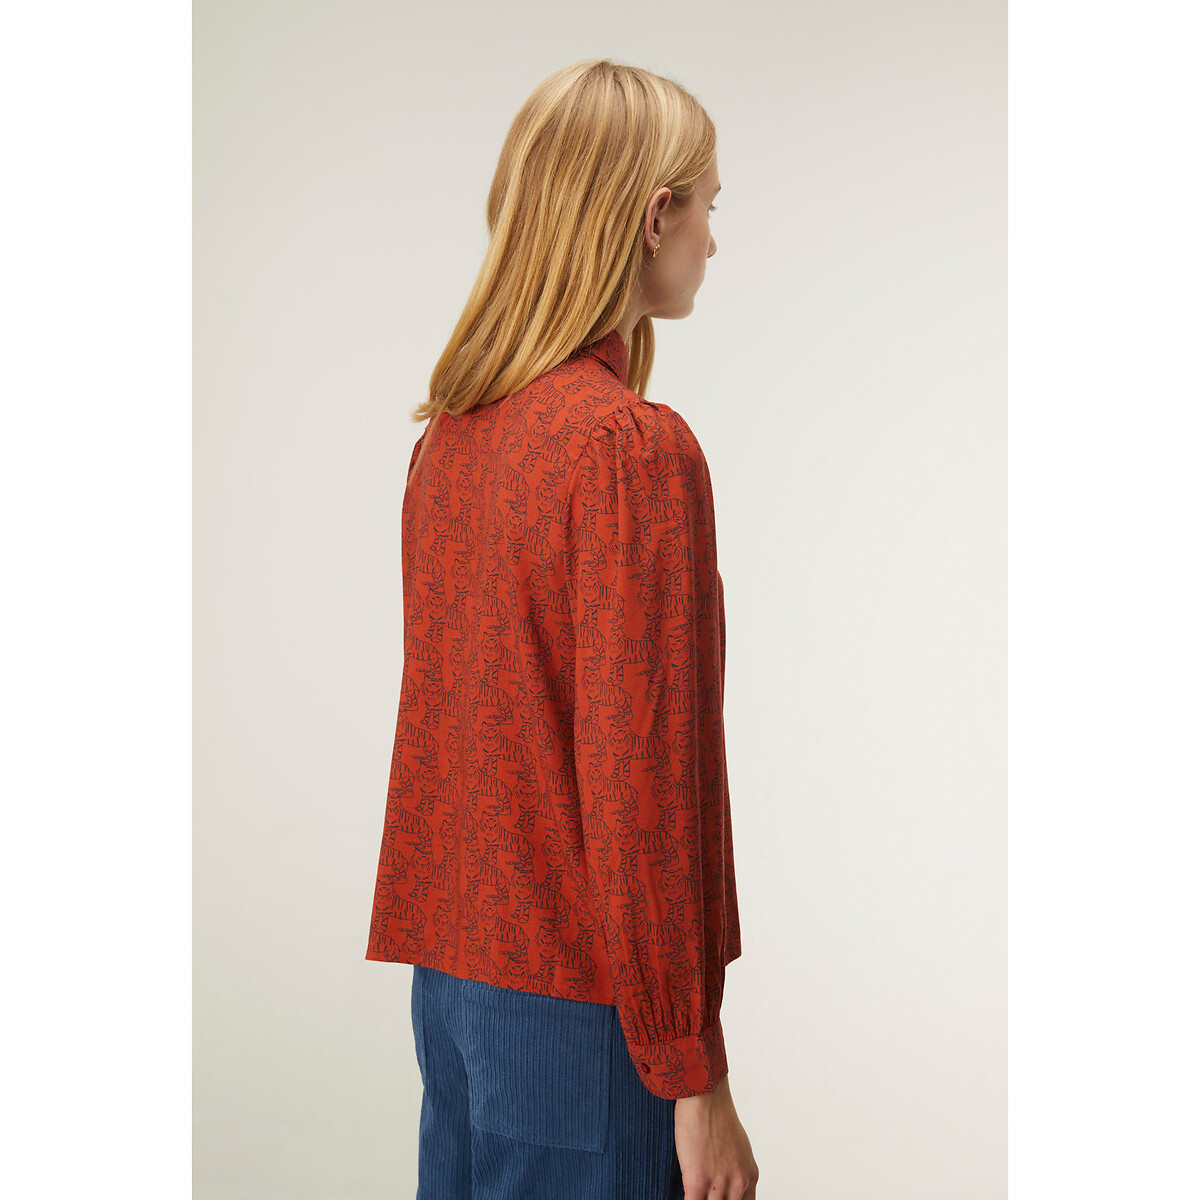 Блузка COMPANIA FANTASTICA Блузка С анималистичным принтом M оранжевый, размер M - фото 2